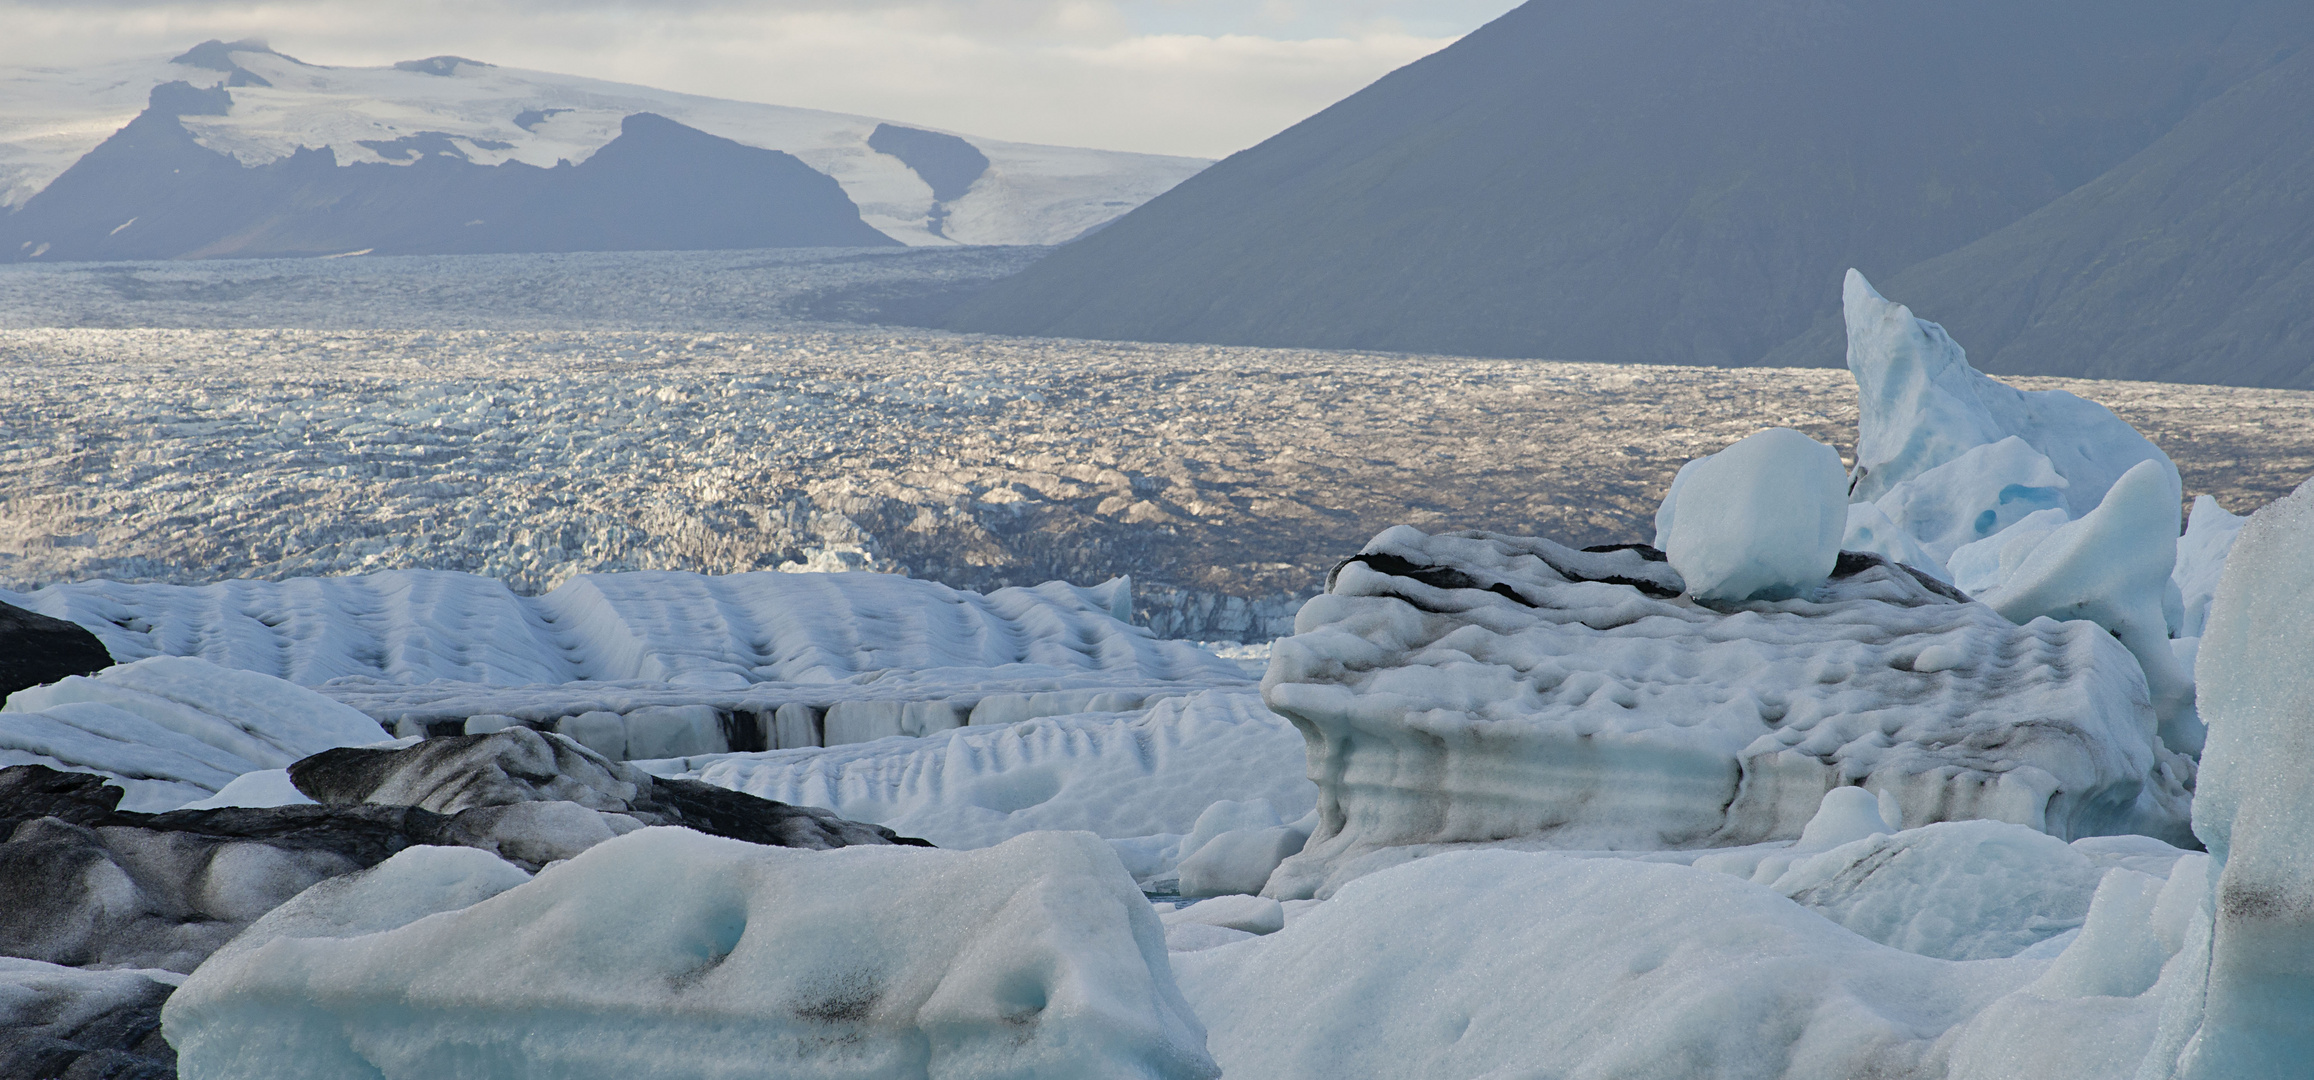 Gletscherlagune Jökulsàrlon mit Gletscherzunge